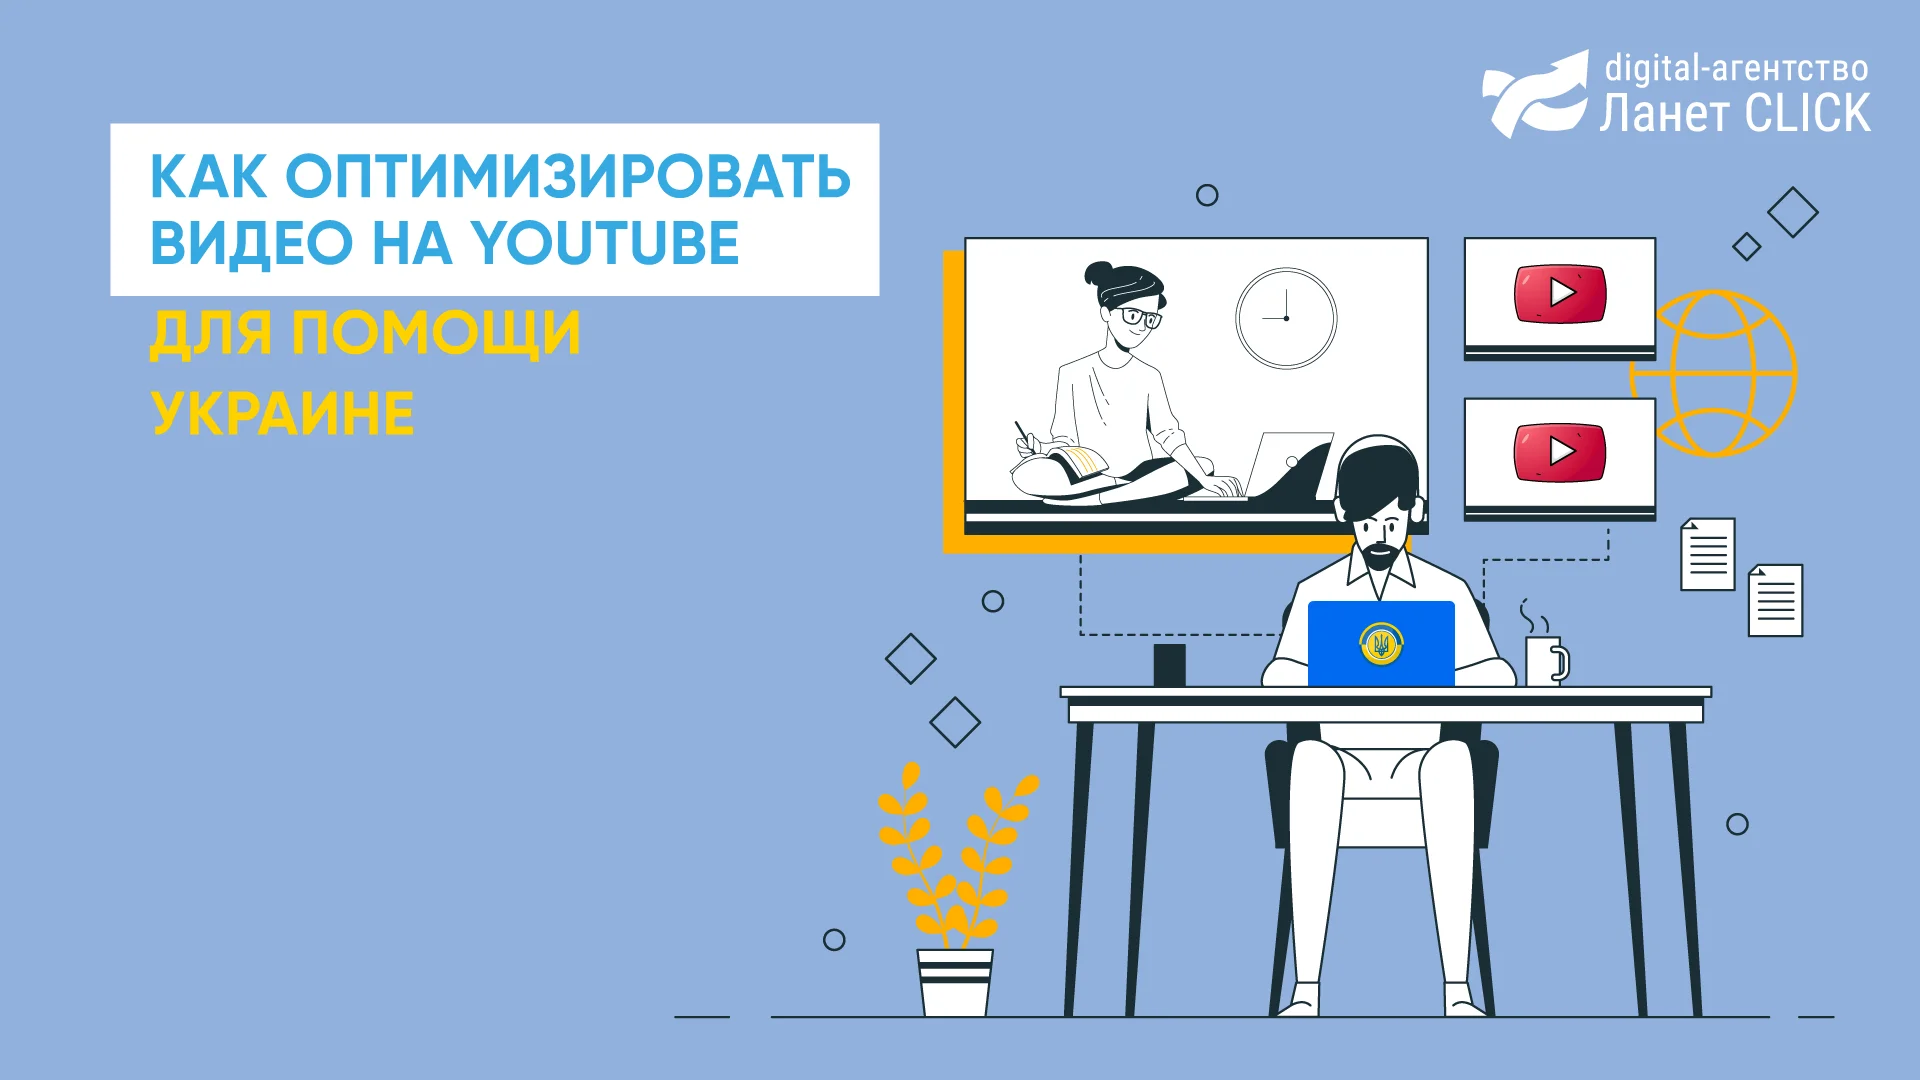 Как оптимизировать видео на Youtube для помощи Украине